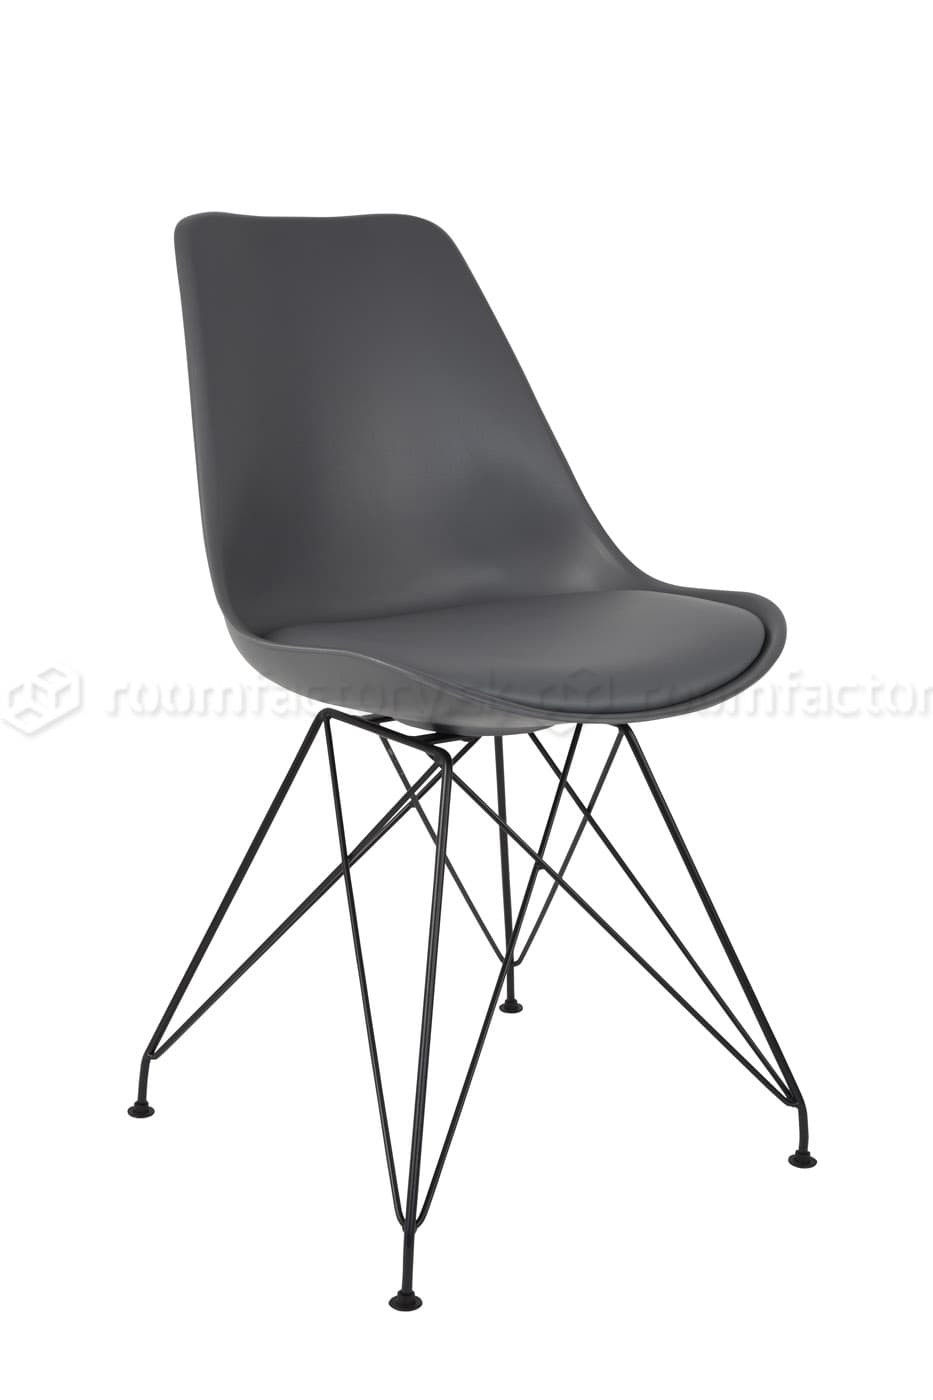 WL-Living Ozzy dizajnová stolička - výpredaj skladu 3